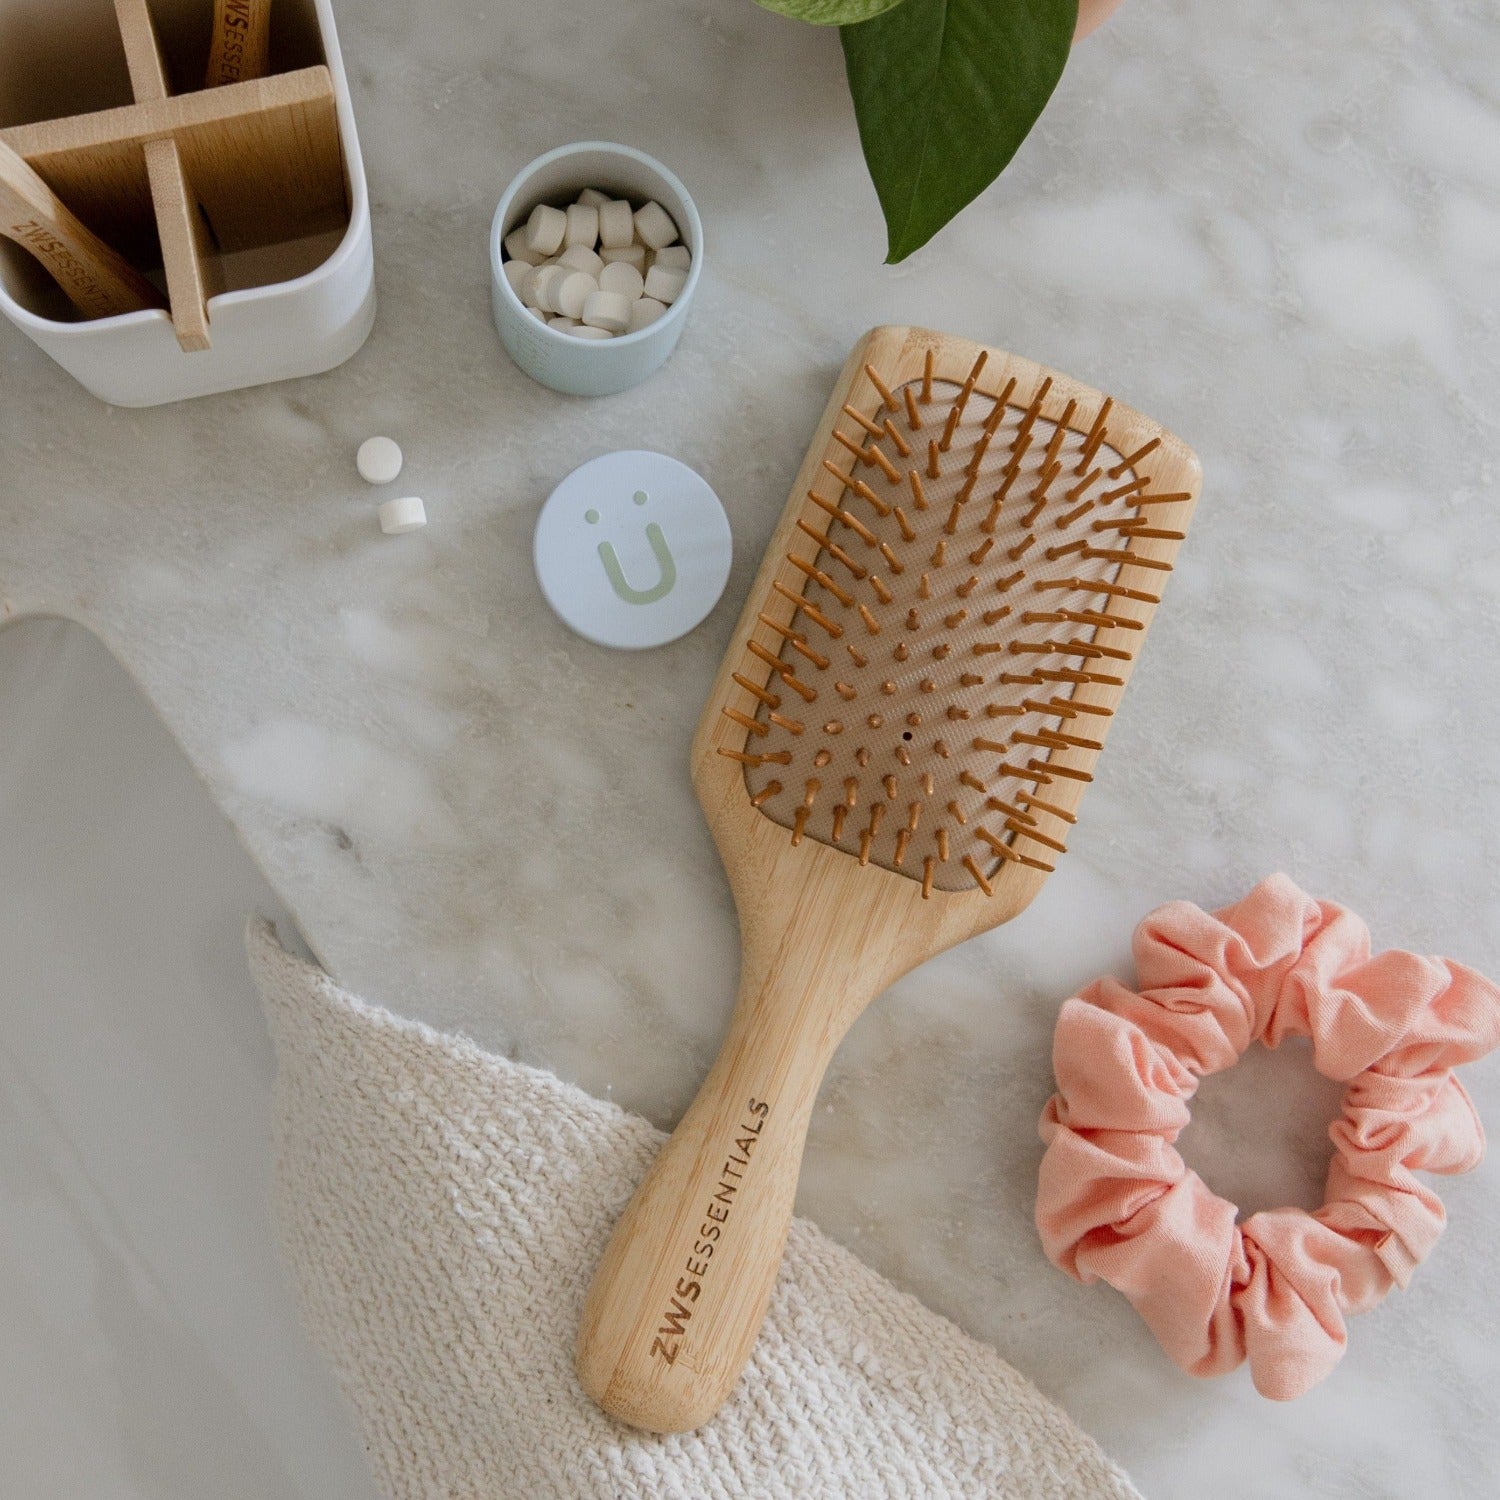 ZWS Essentials Bamboo Hair Brush - Zero Waste Hair Brush, Plastic Free, 100% Bamboo, Compostable